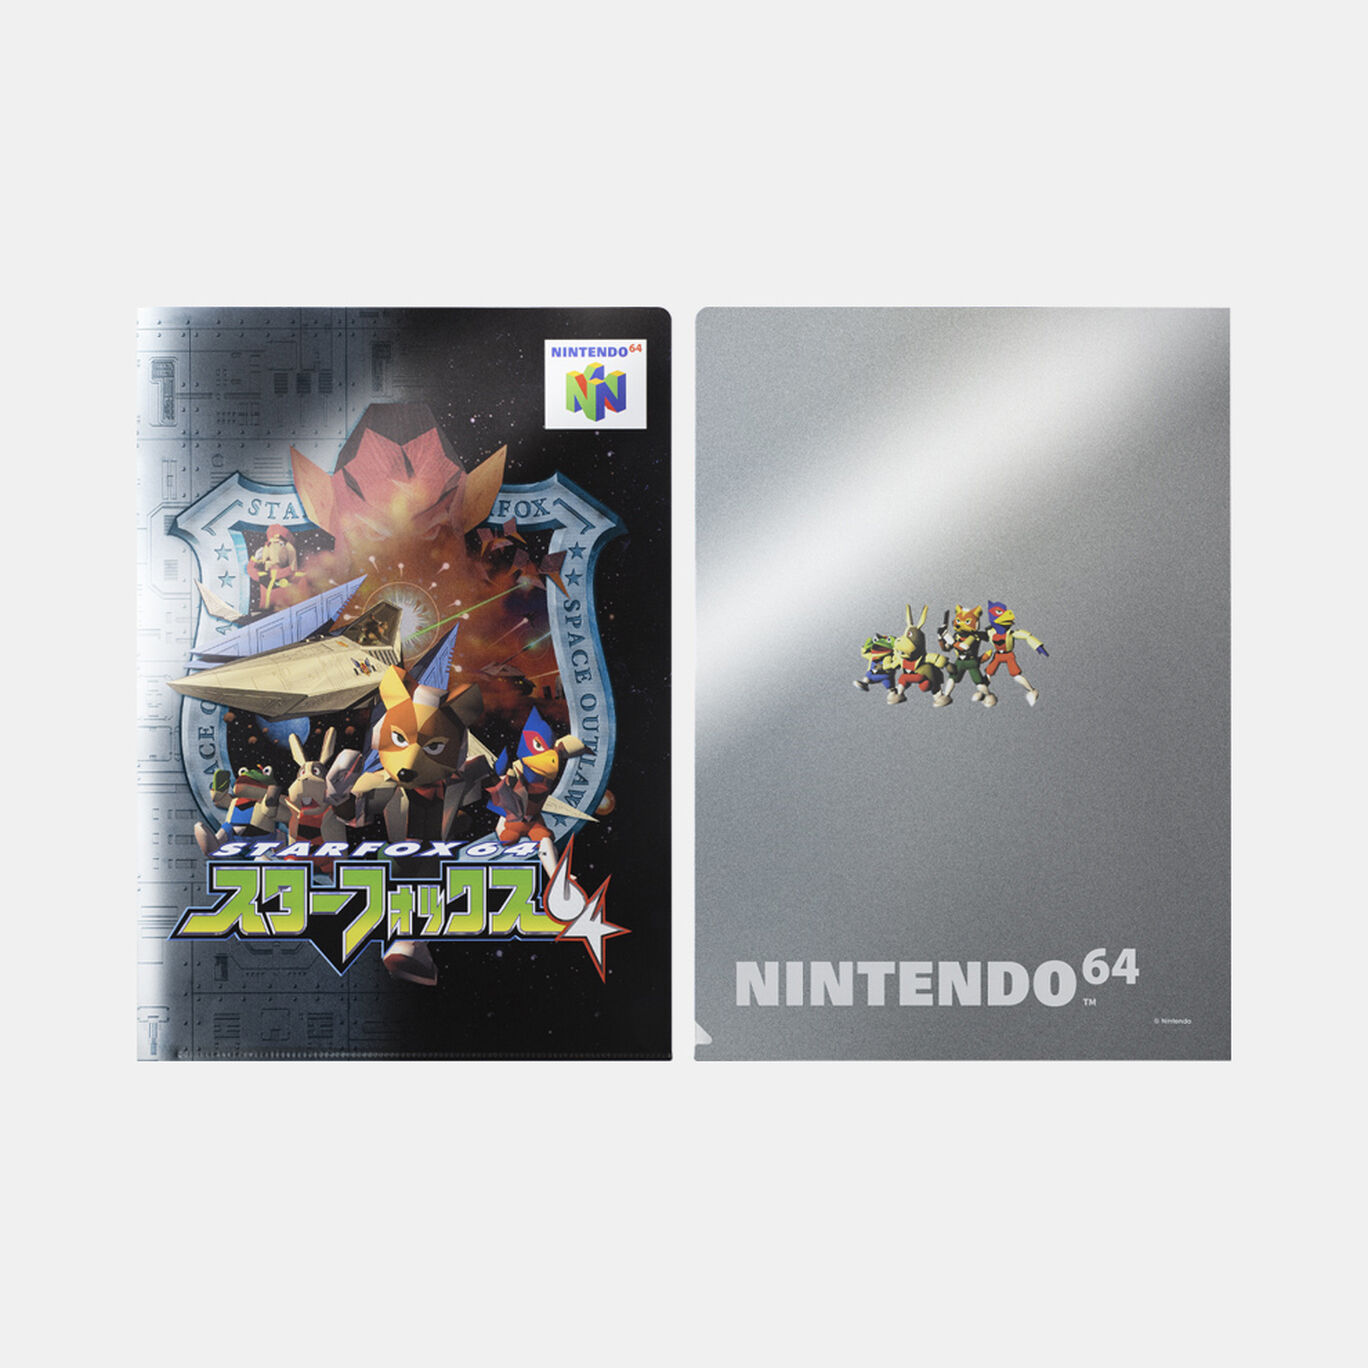 ケース入りA4クリアファイル6枚セット NINTENDO 64【Nintendo TOKYO取り扱い商品】